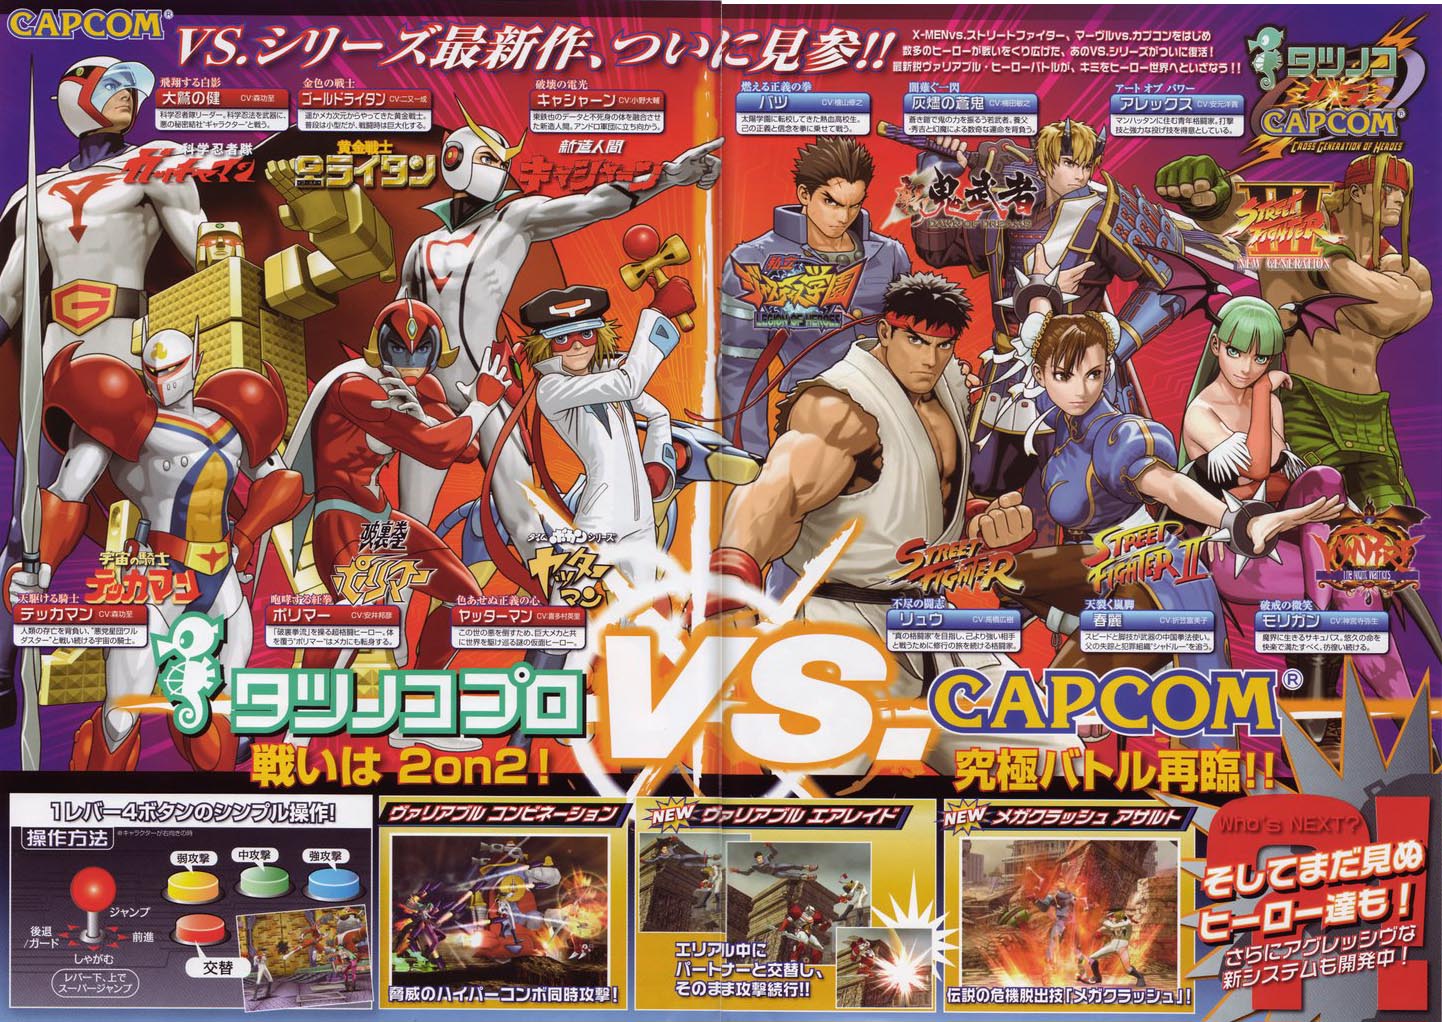 Tatsunoko Vs. Capcom: Ultimate All-Stars HD wallpapers, Desktop wallpaper - most viewed